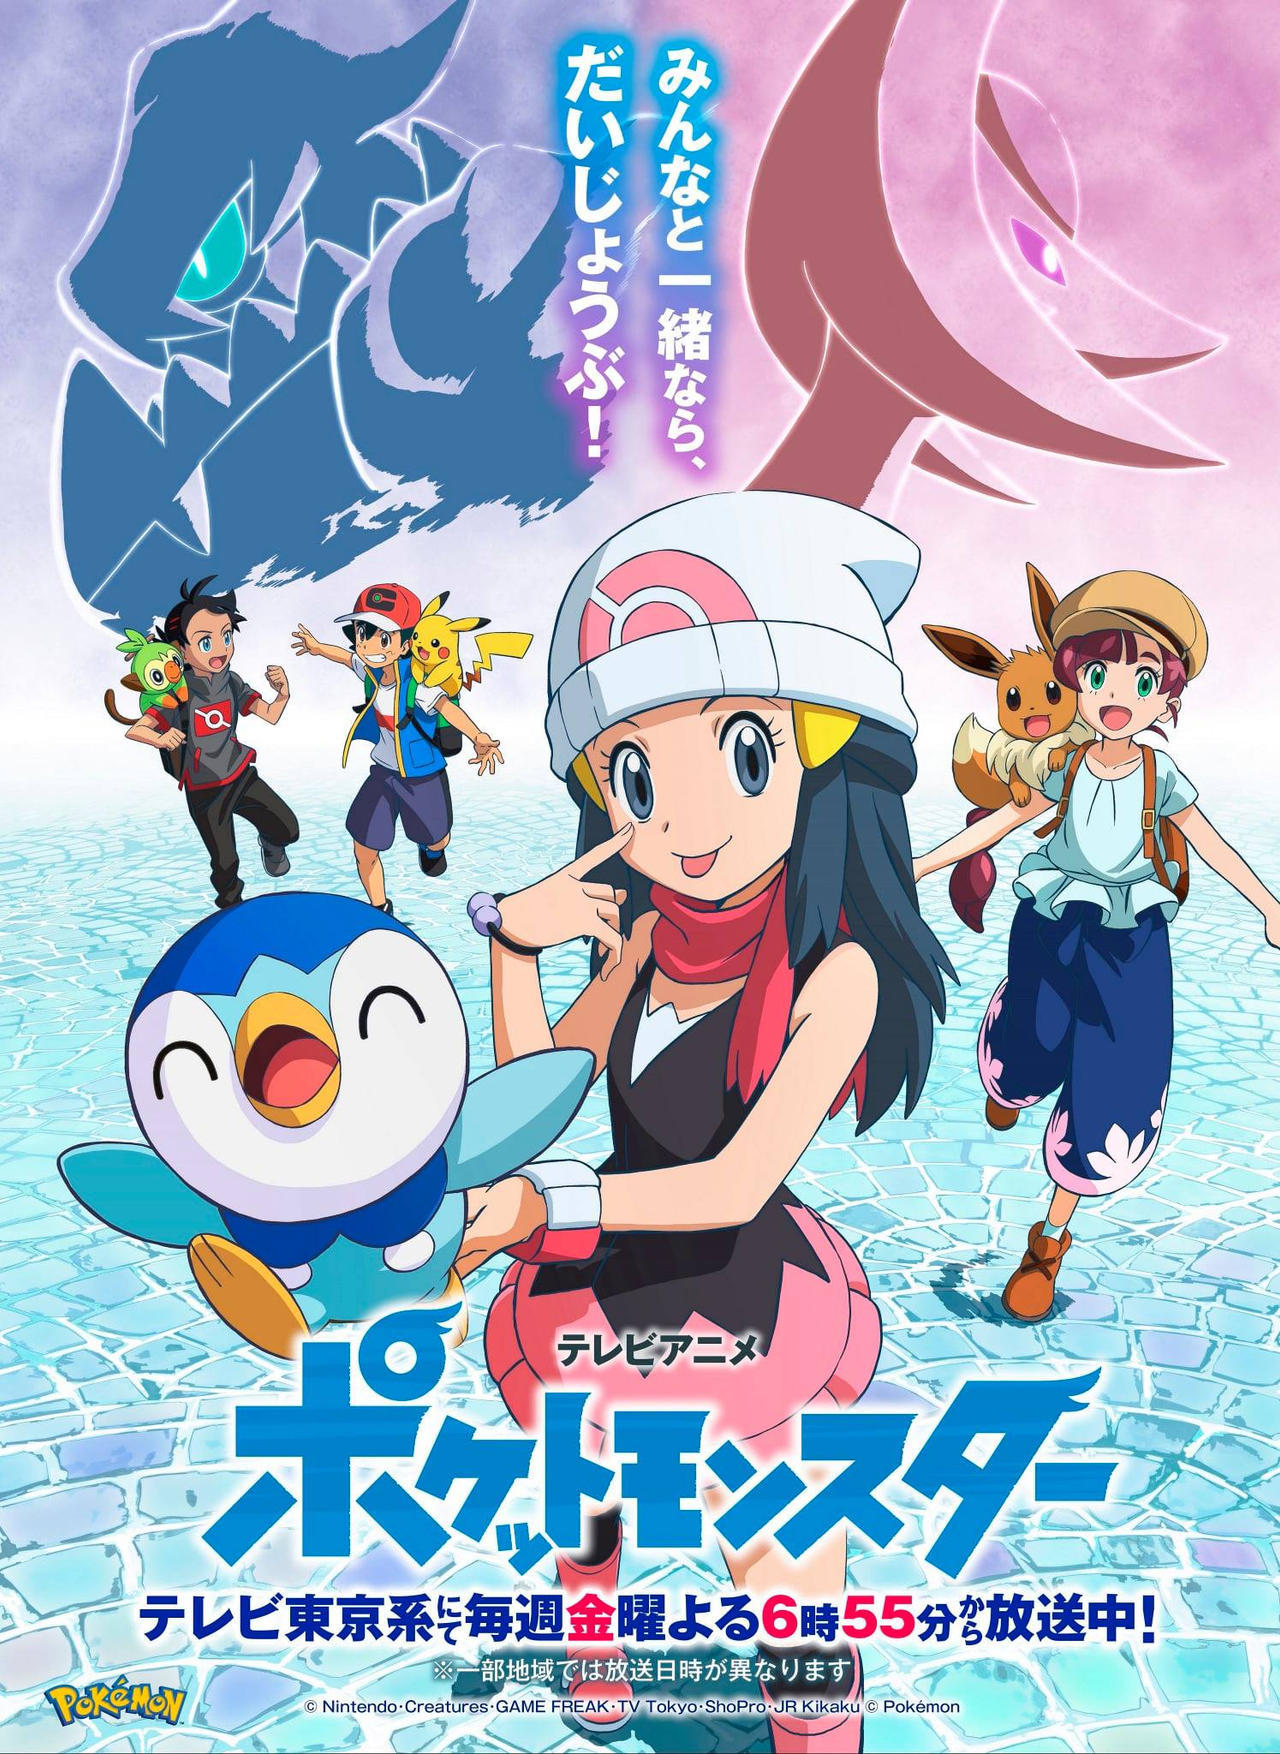 Pokemon Journeys Drops Poster for Dawn's Return